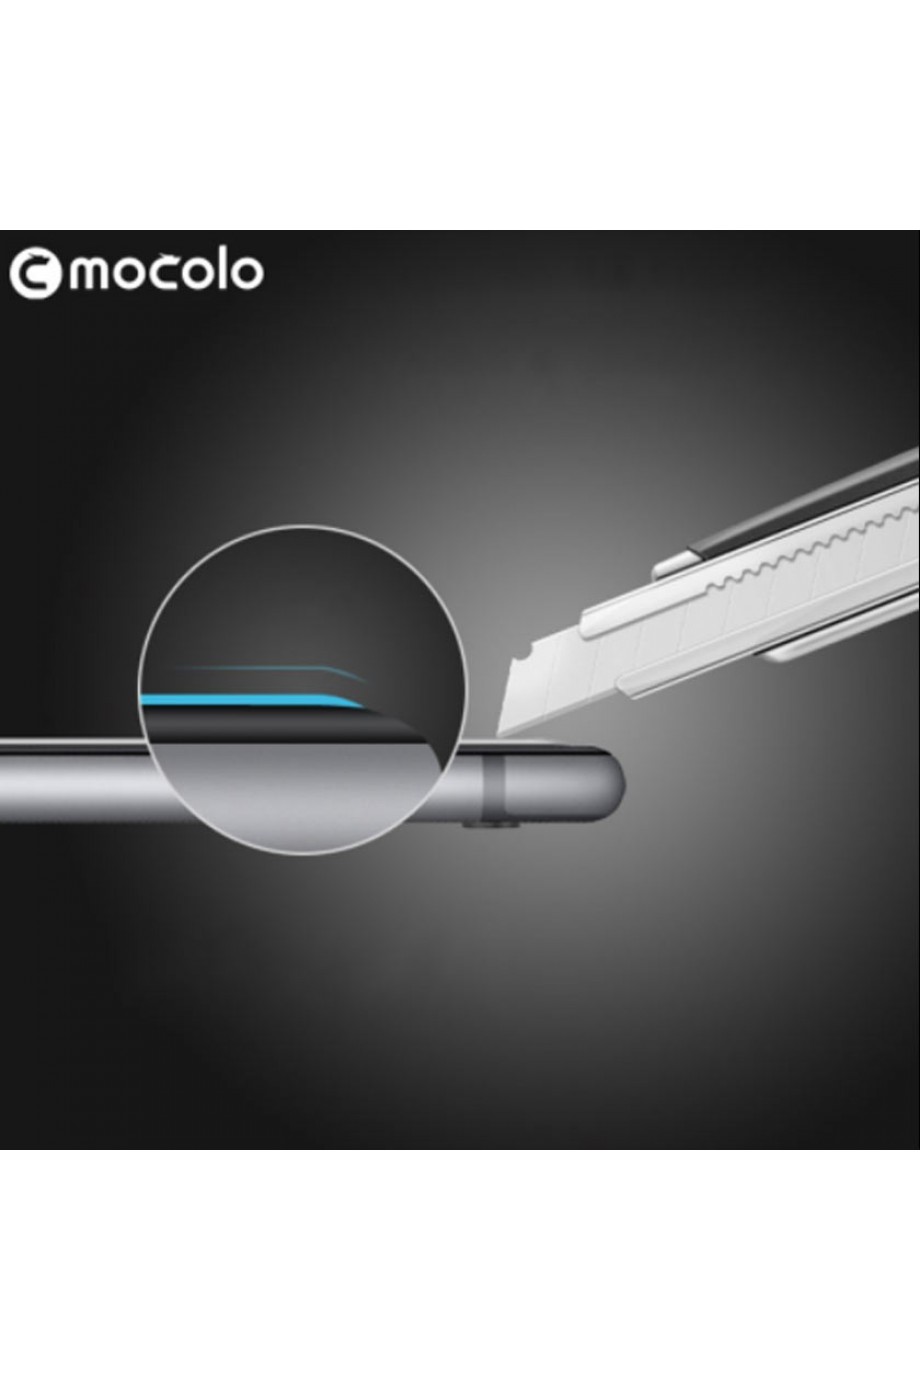 Защитное стекло Mocolo для iPhone 8